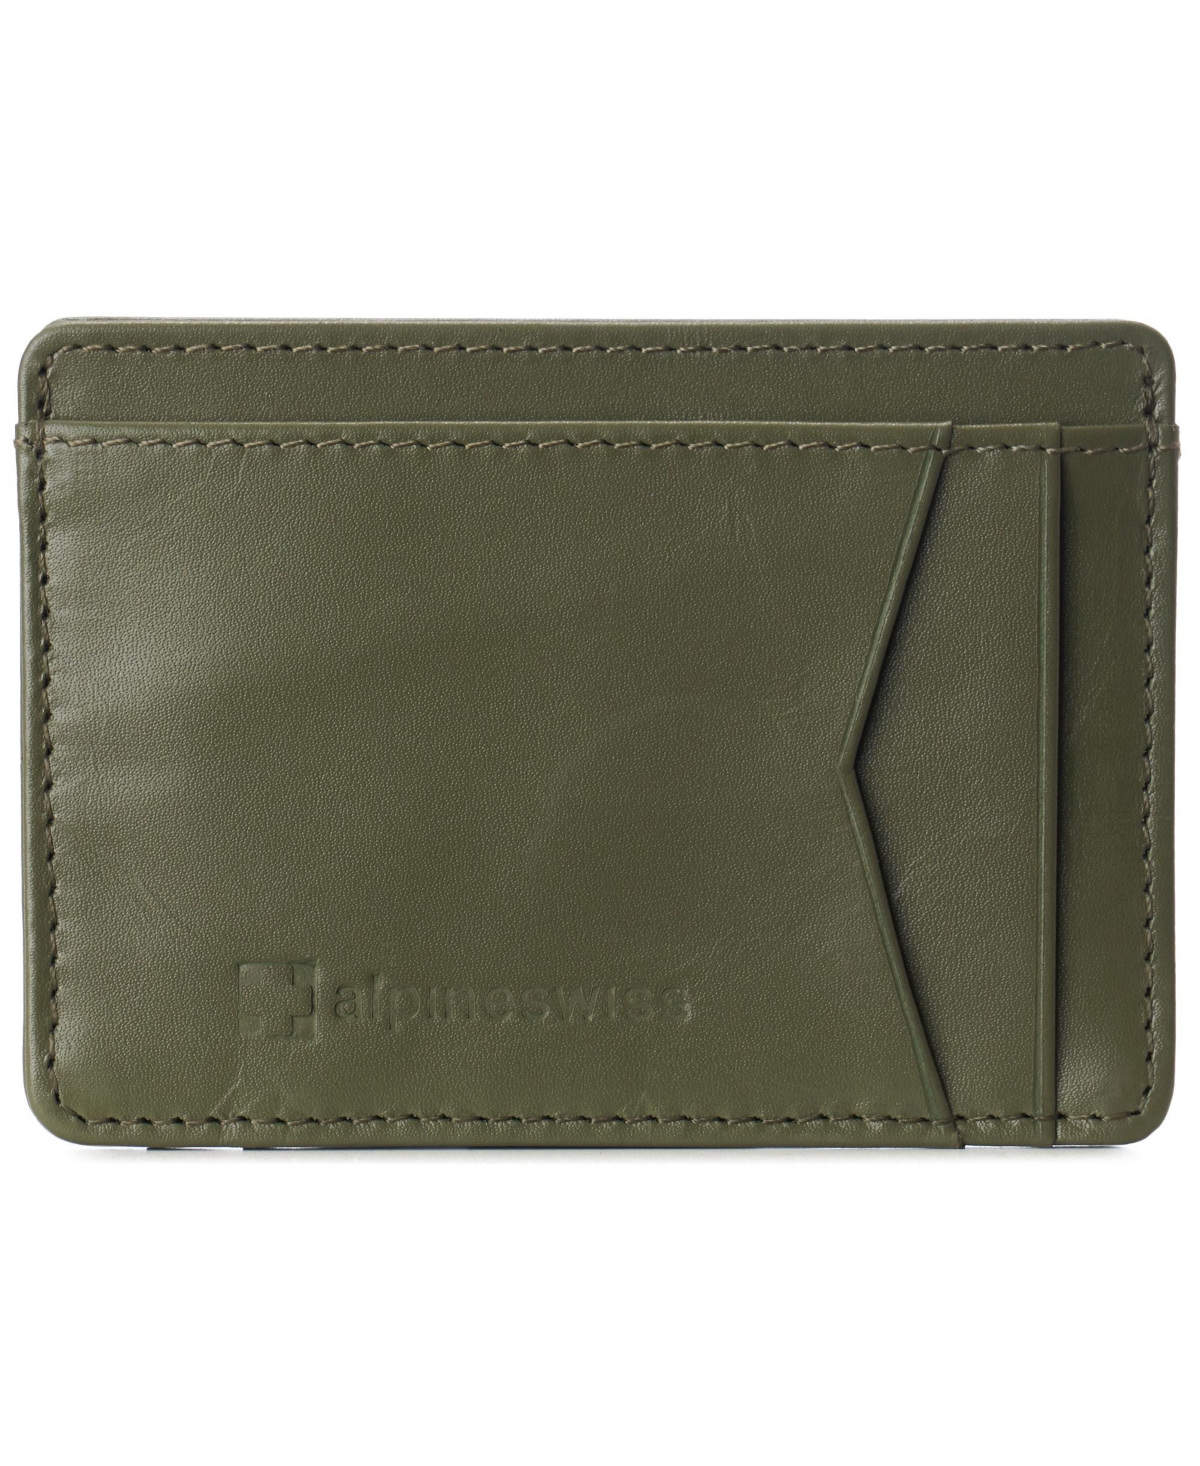 Mens Rfid Safe Front Pocket Wallet Smooth Leather Slim Card Holder - Olive